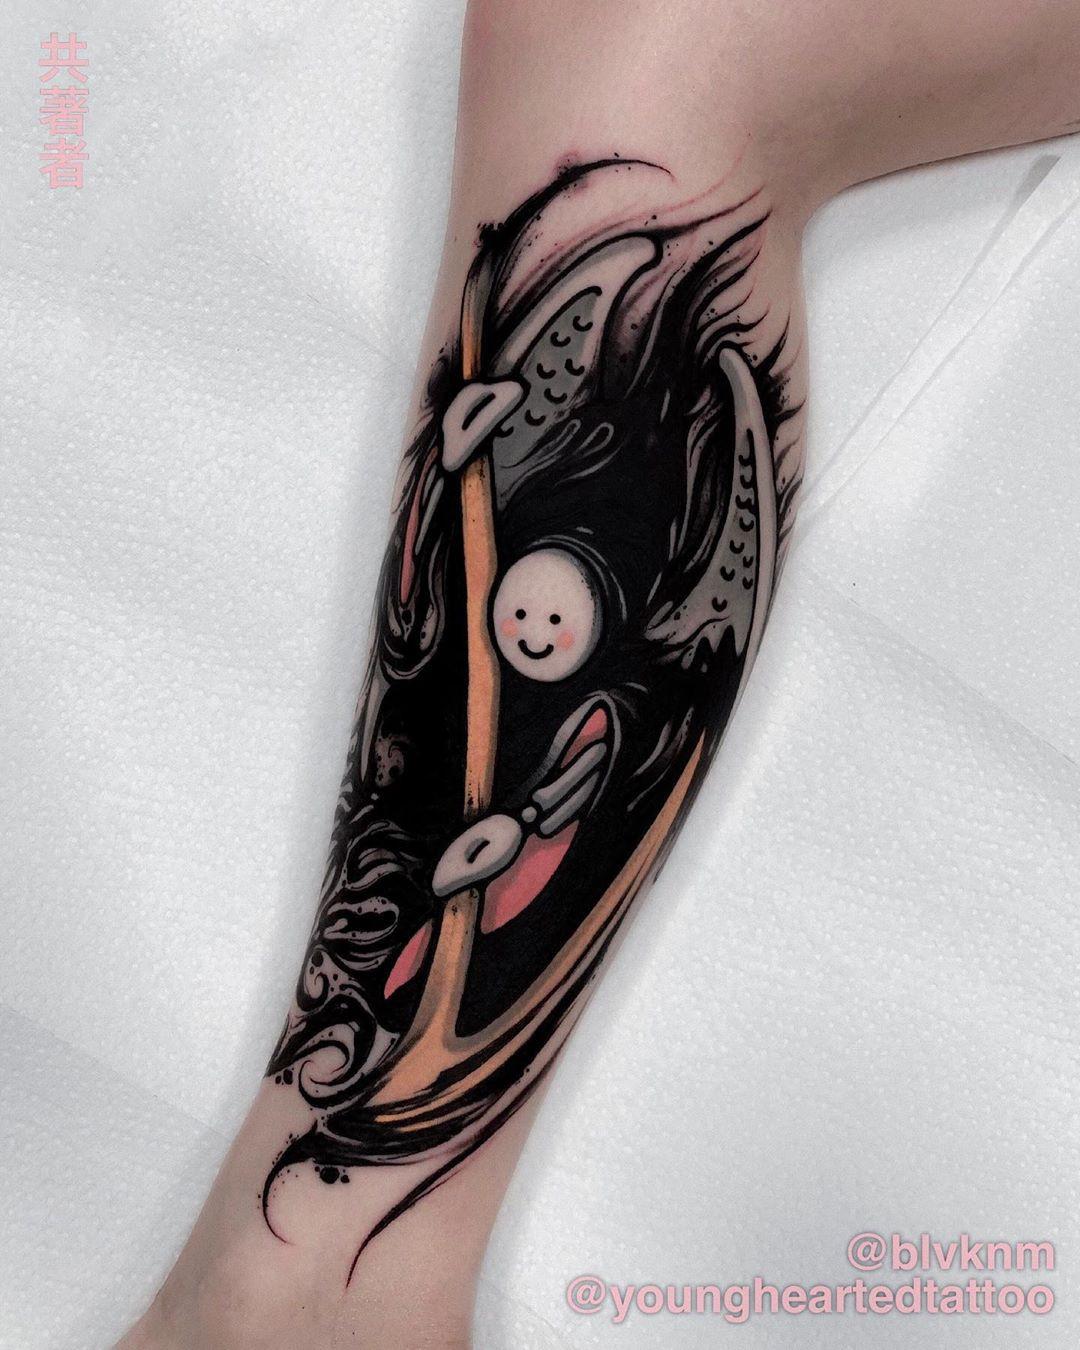 Inksearch tattoo Felix Seele